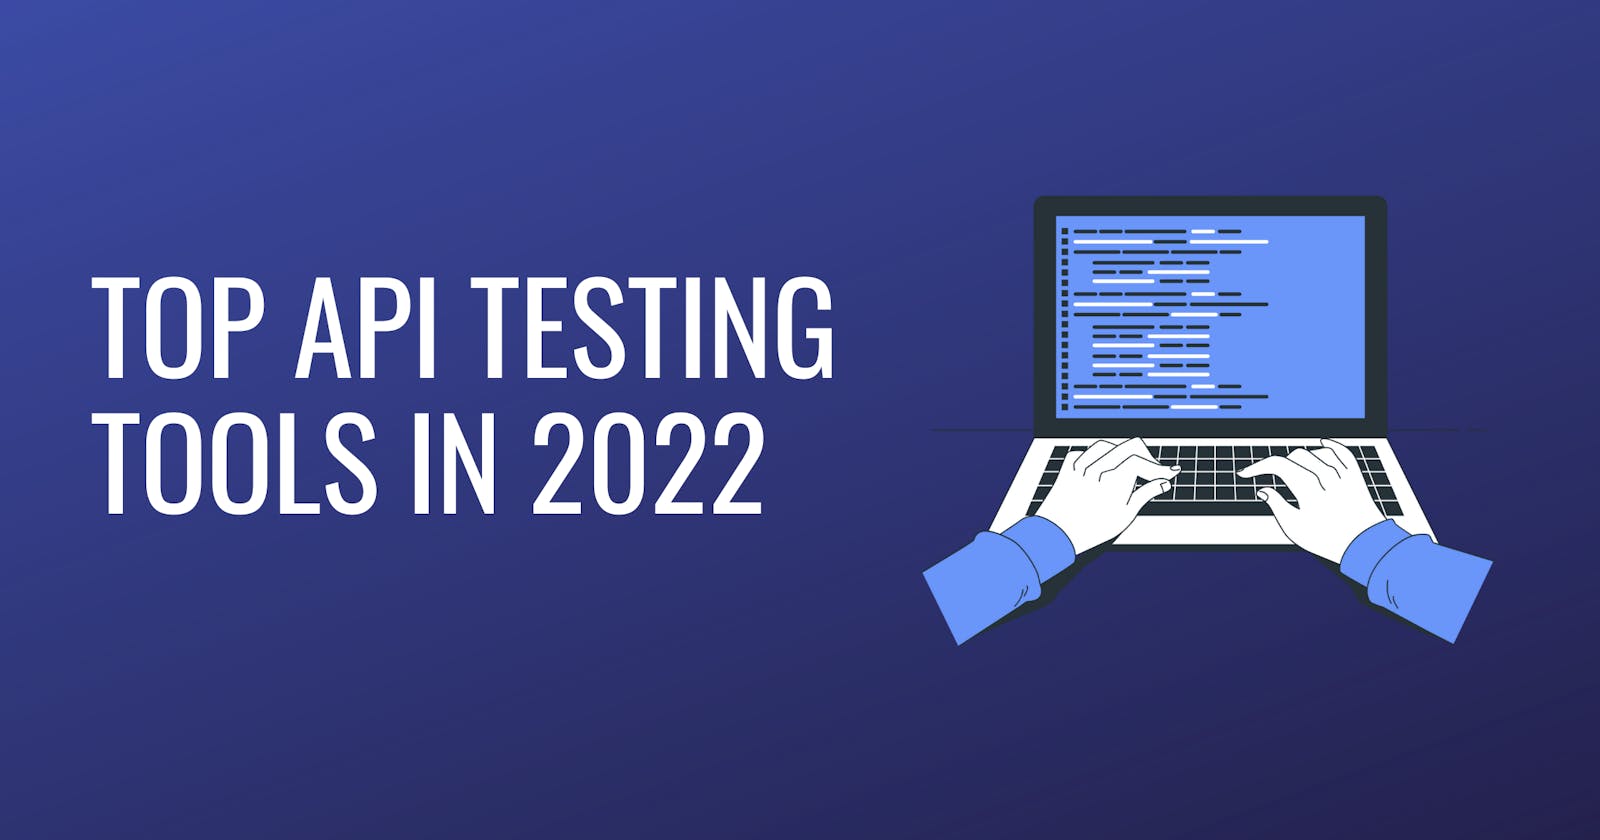 Top API Testing Tools in 2022